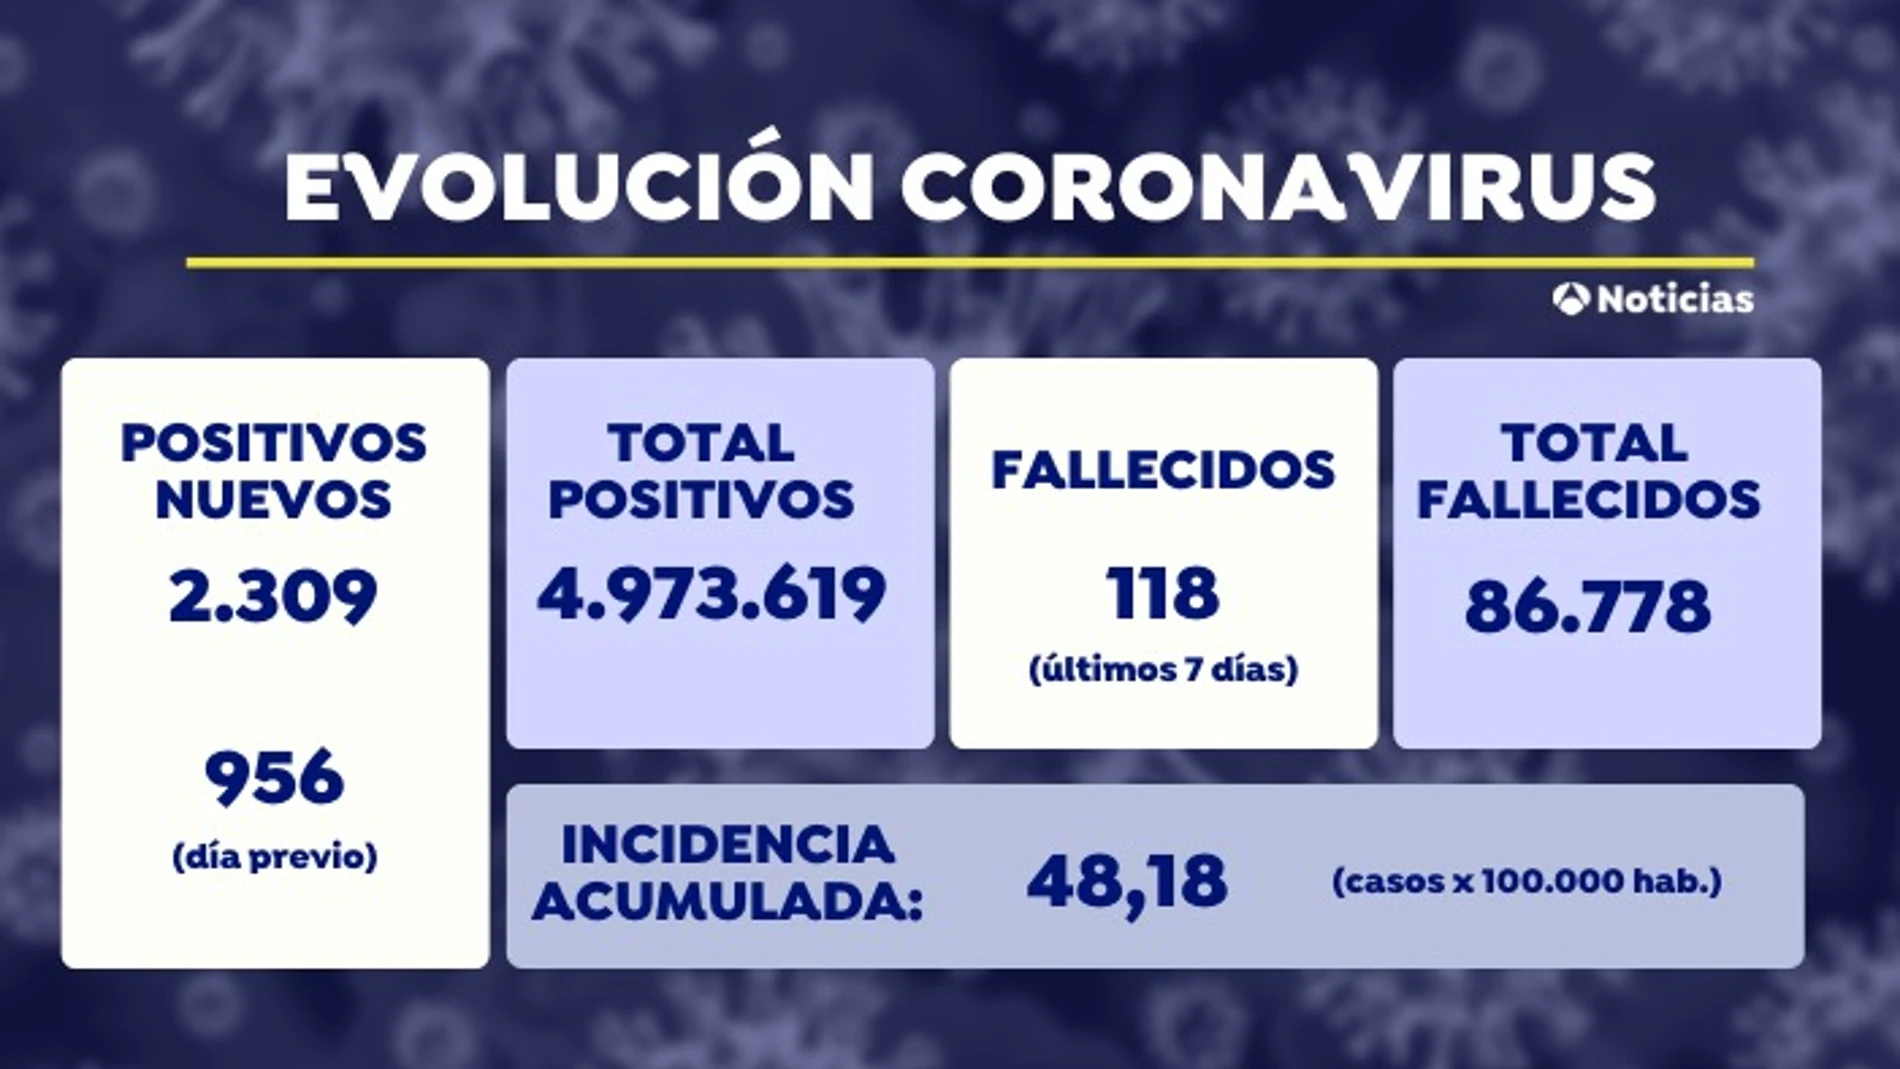 España se mantiene en riesgo bajo de contagio por coronavirus con una incidencia de 48,18 